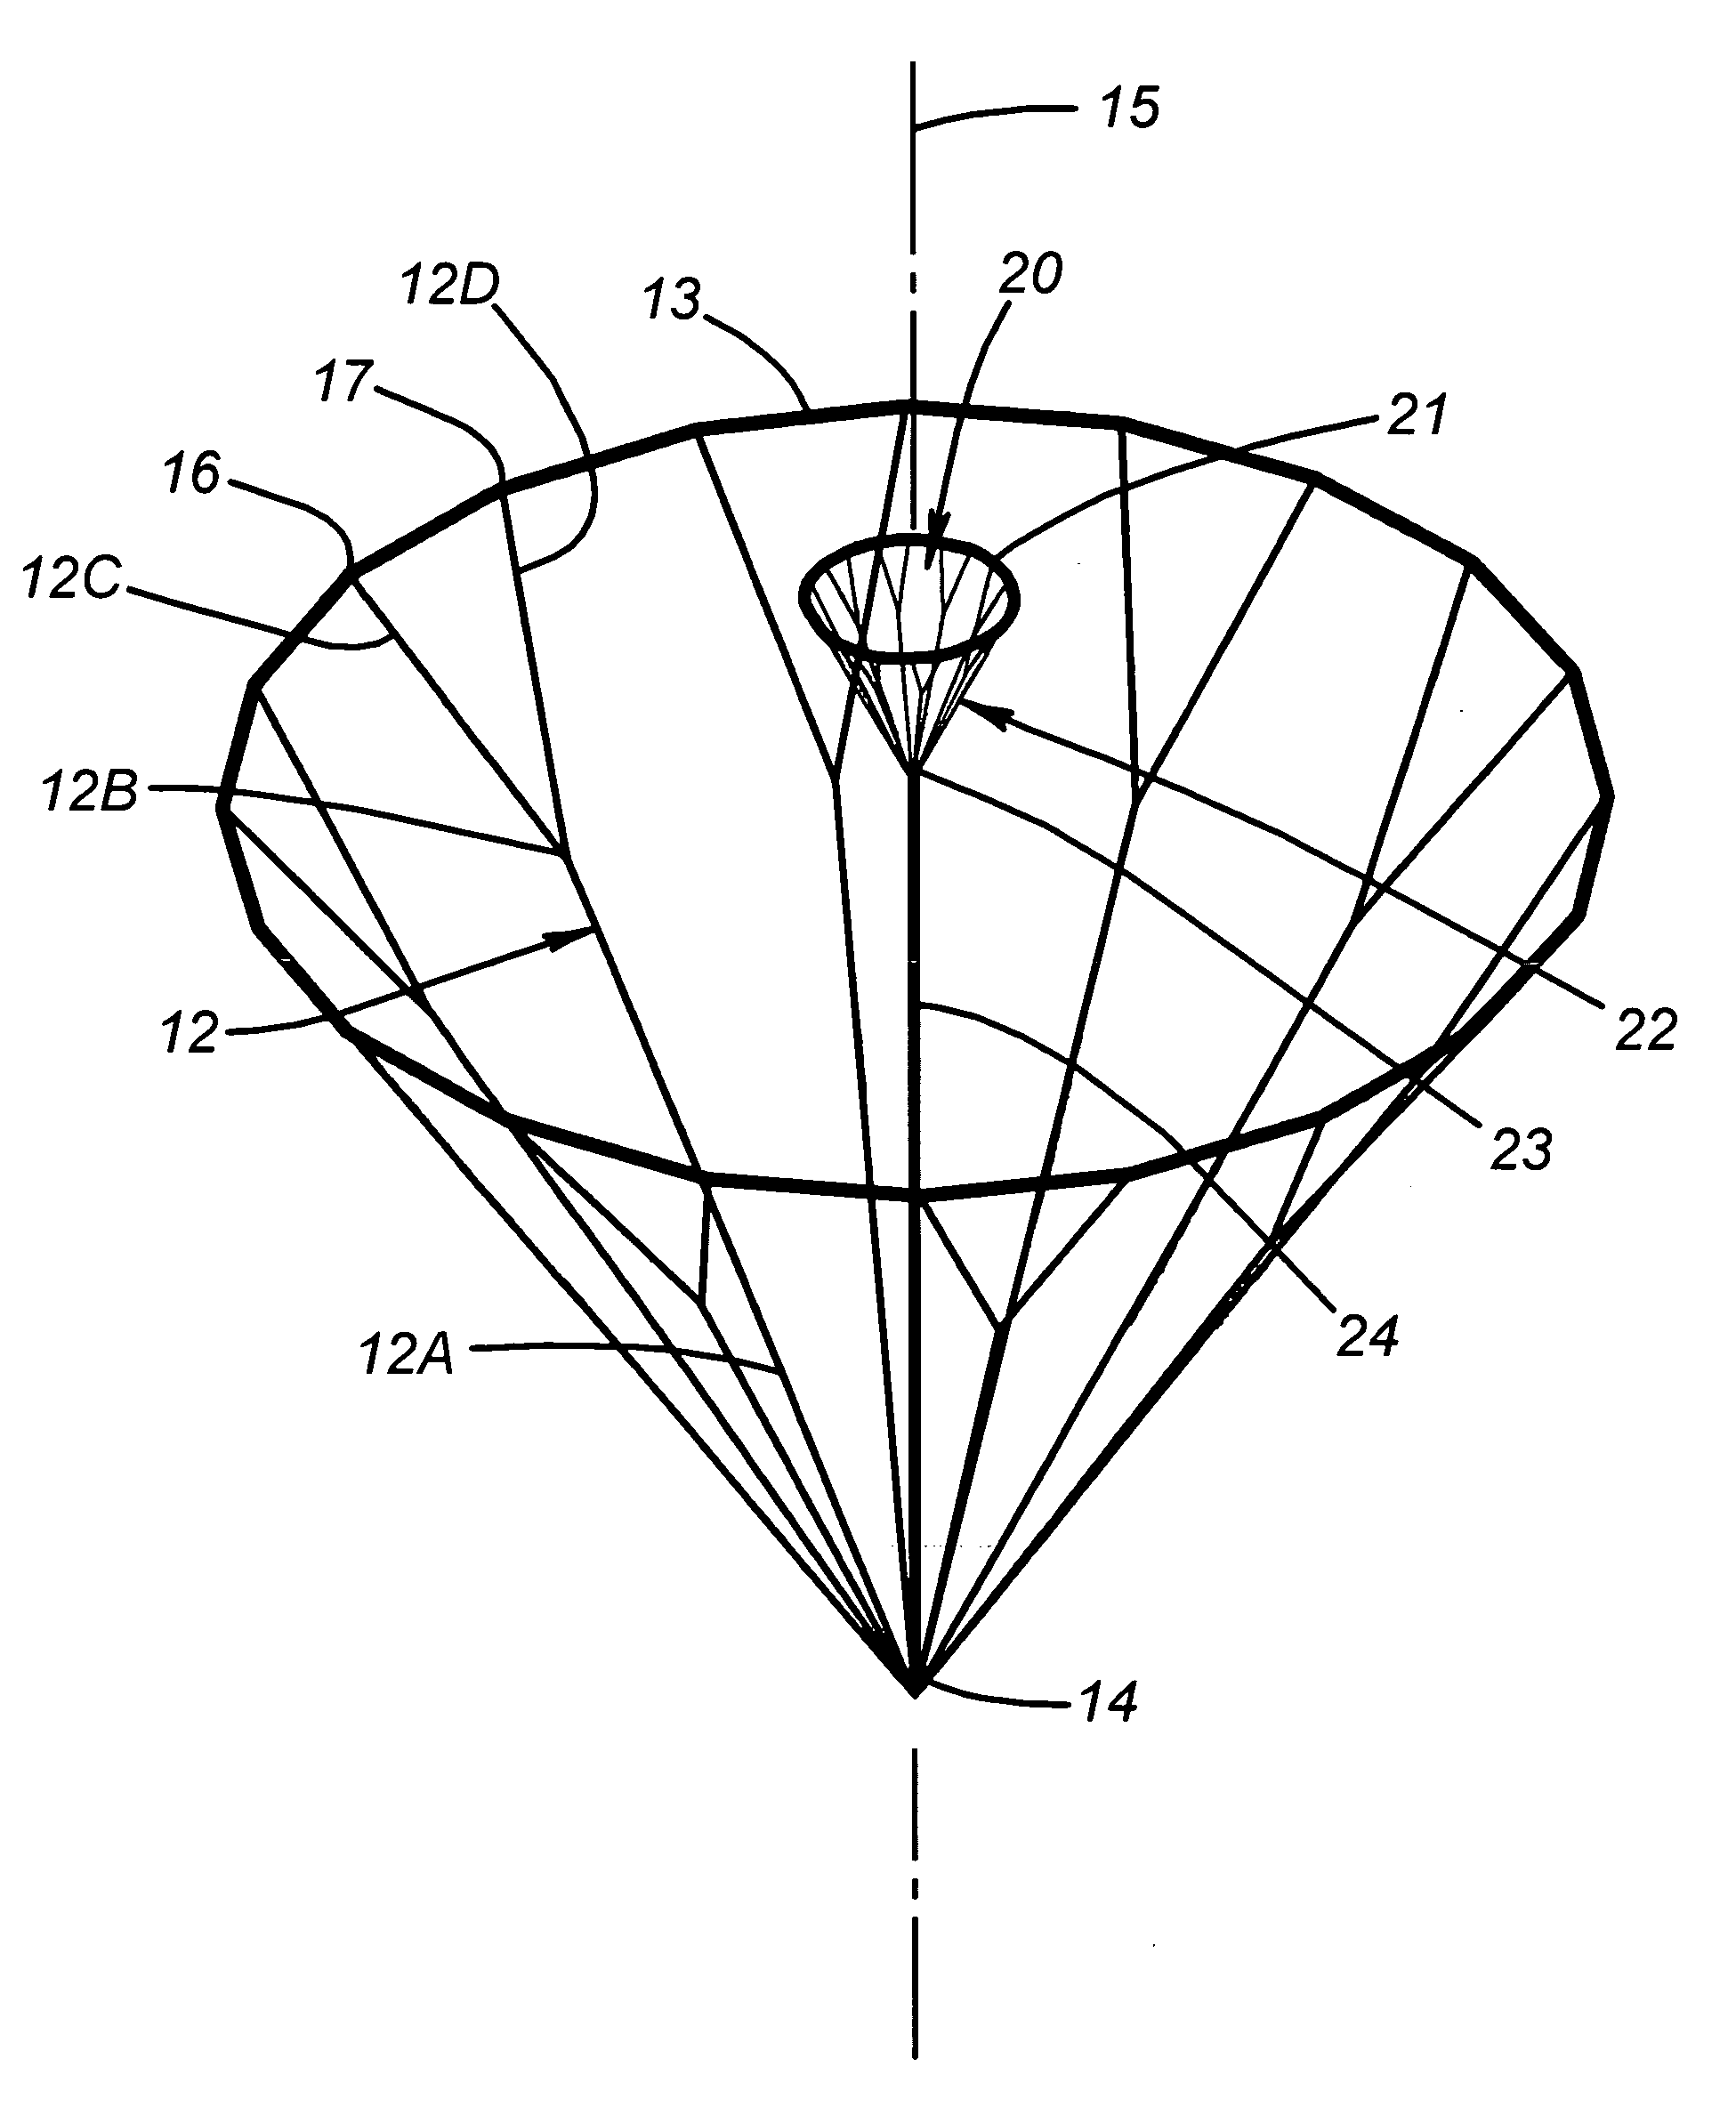 Circular parachute